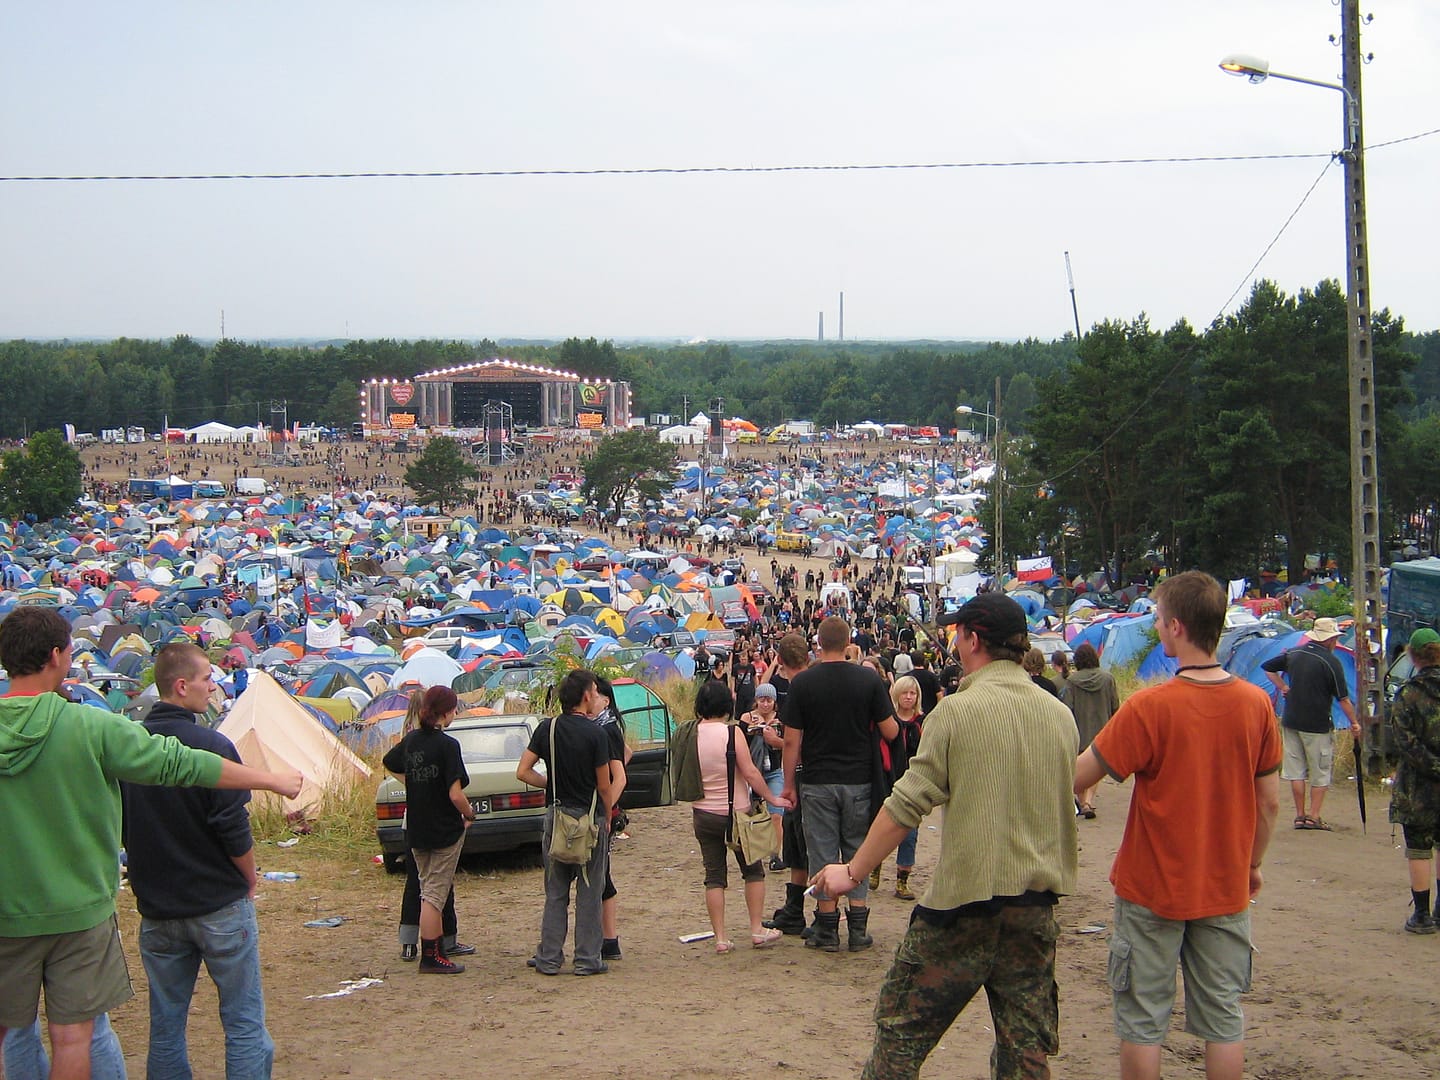 Widok na główną scenę z ASP, Woodstock, 2008 r.